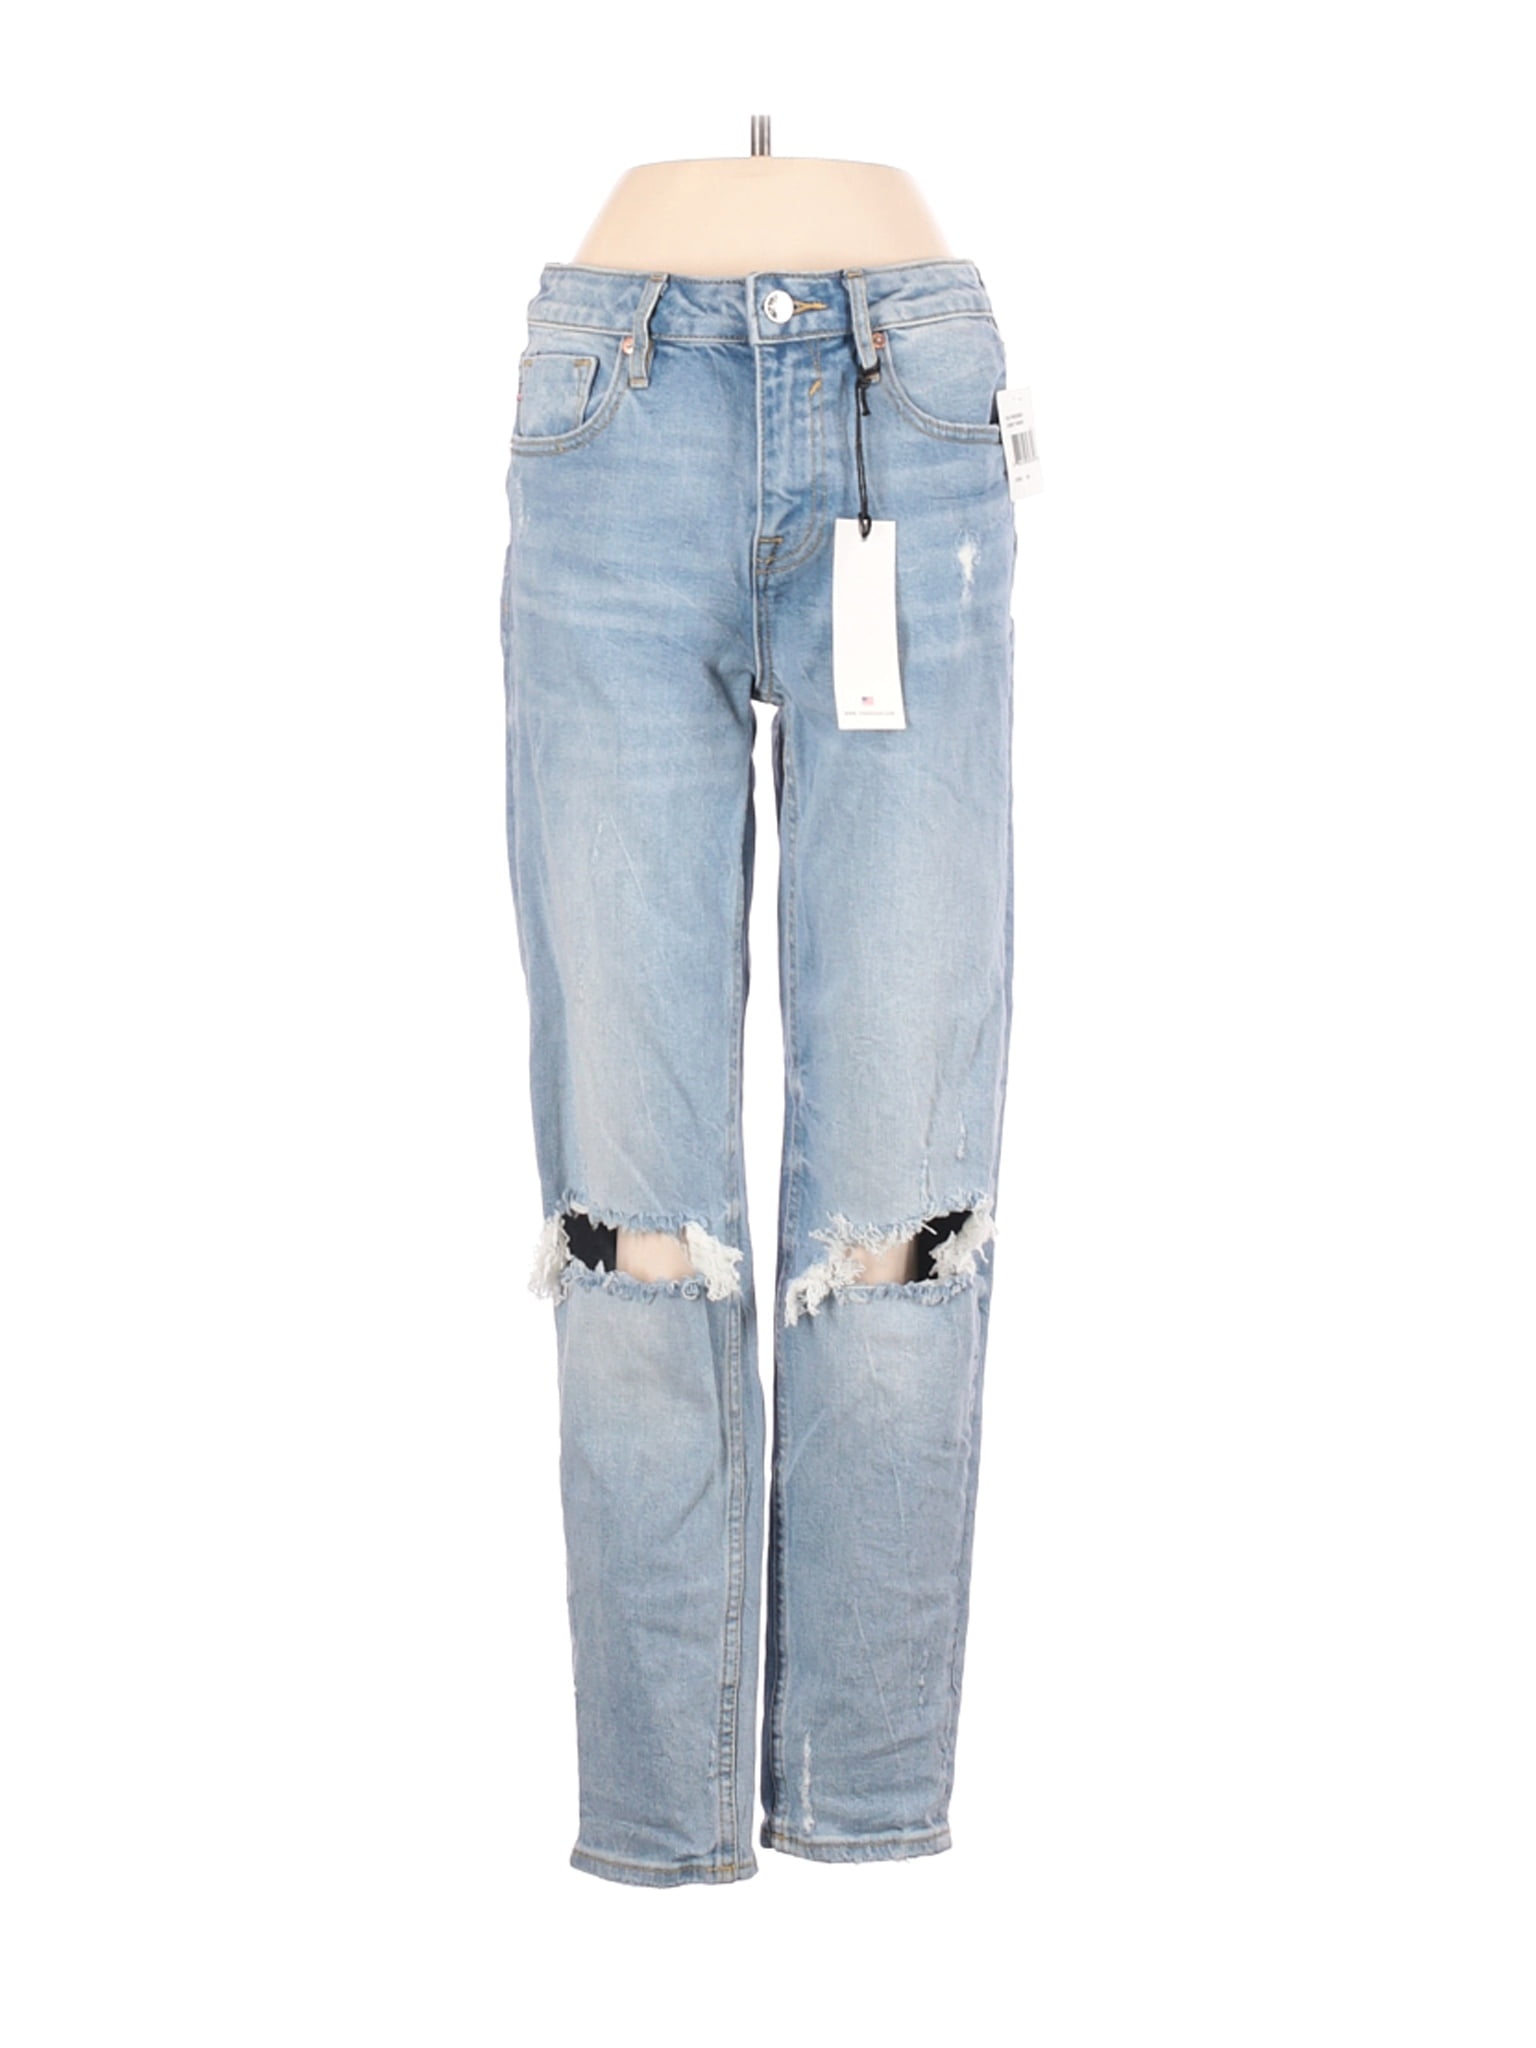 size 24w jeans